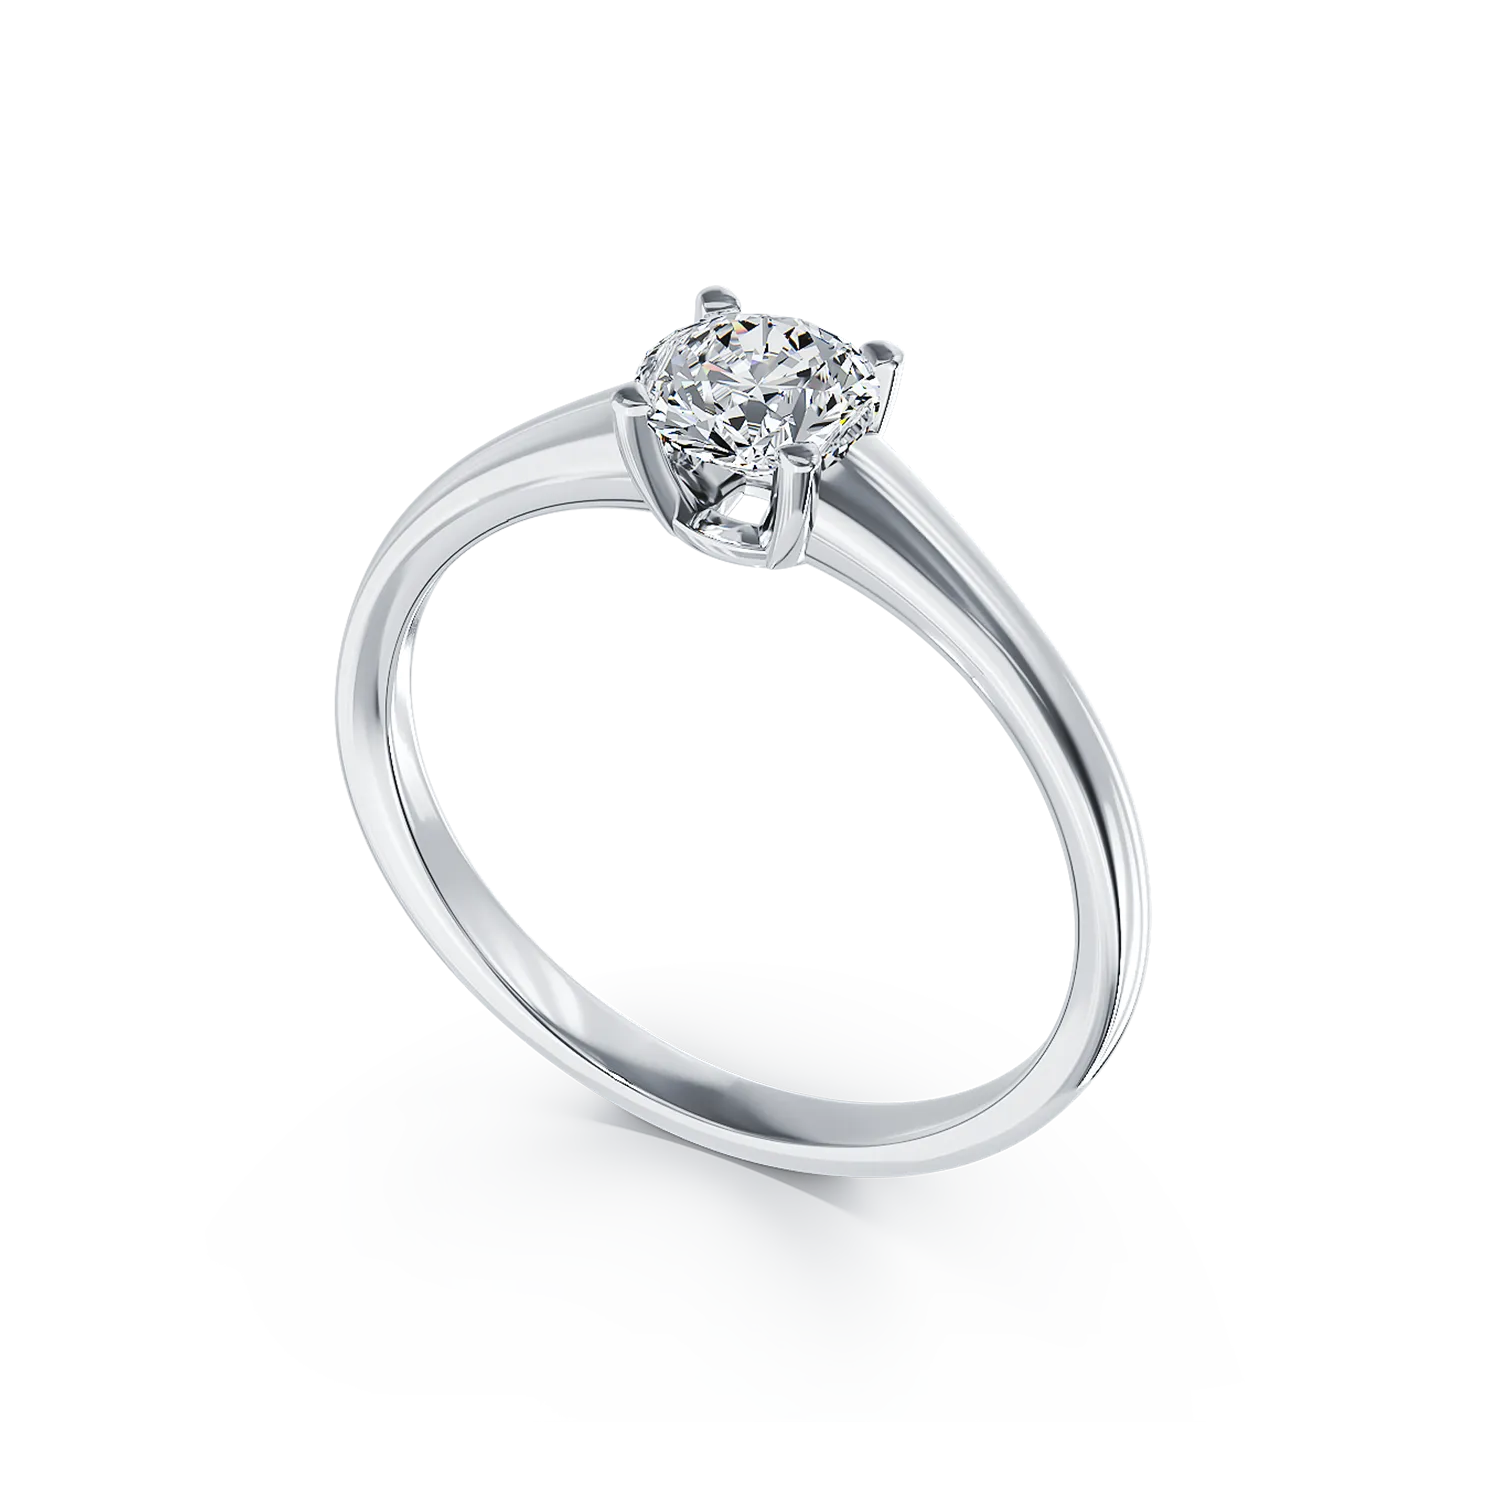 Eljegyzési gyűrű 18K-os fehér aranyból 0,5ct gyémánttal. Gramm: 3,28